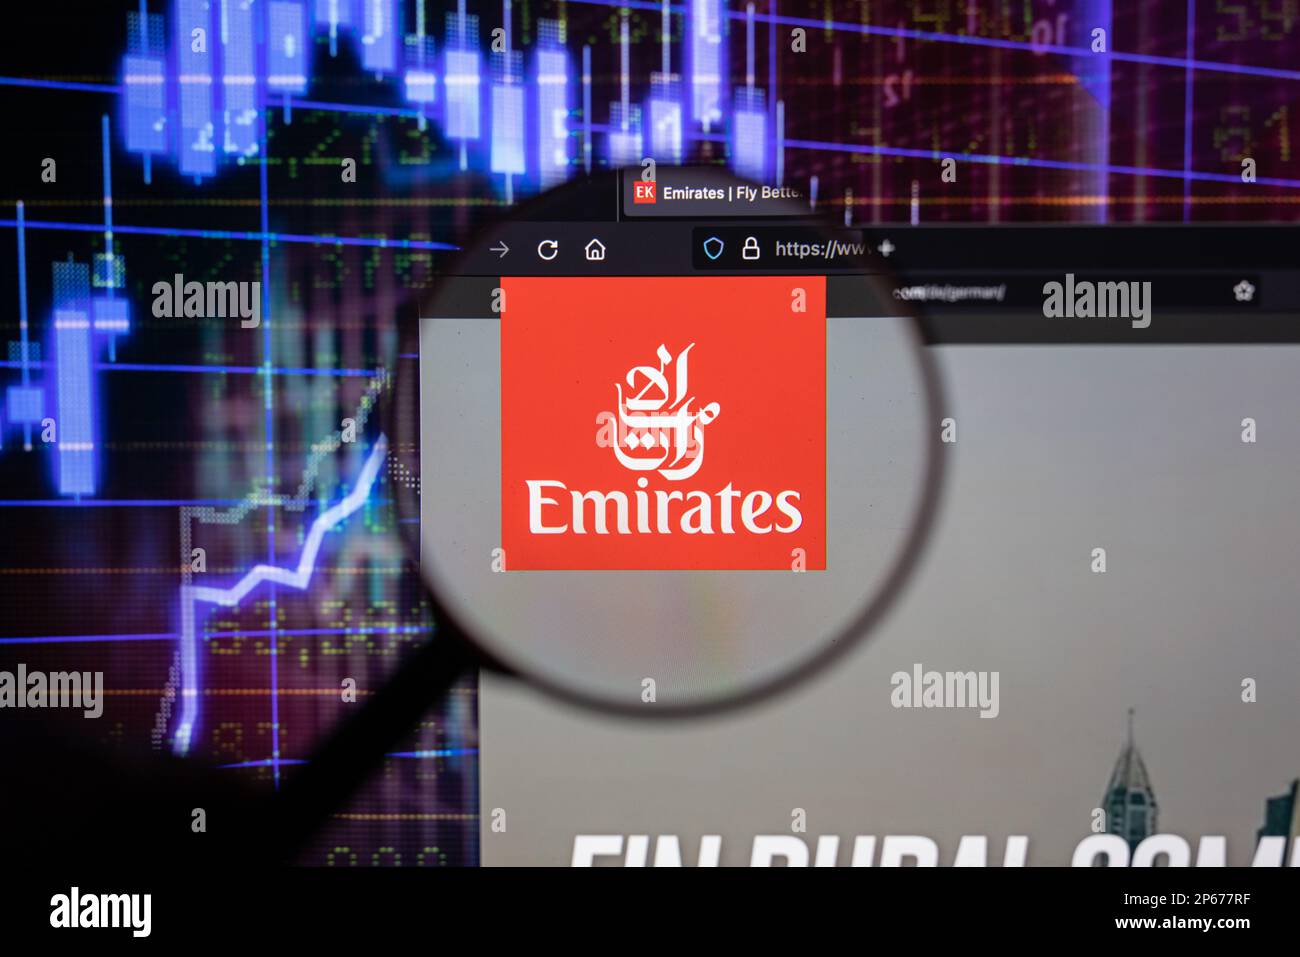 Emirates compagnia aerea logo su un sito web con blurry mercato azionario sviluppi in background, visto su uno schermo attraverso una lente di ingrandimento Foto Stock